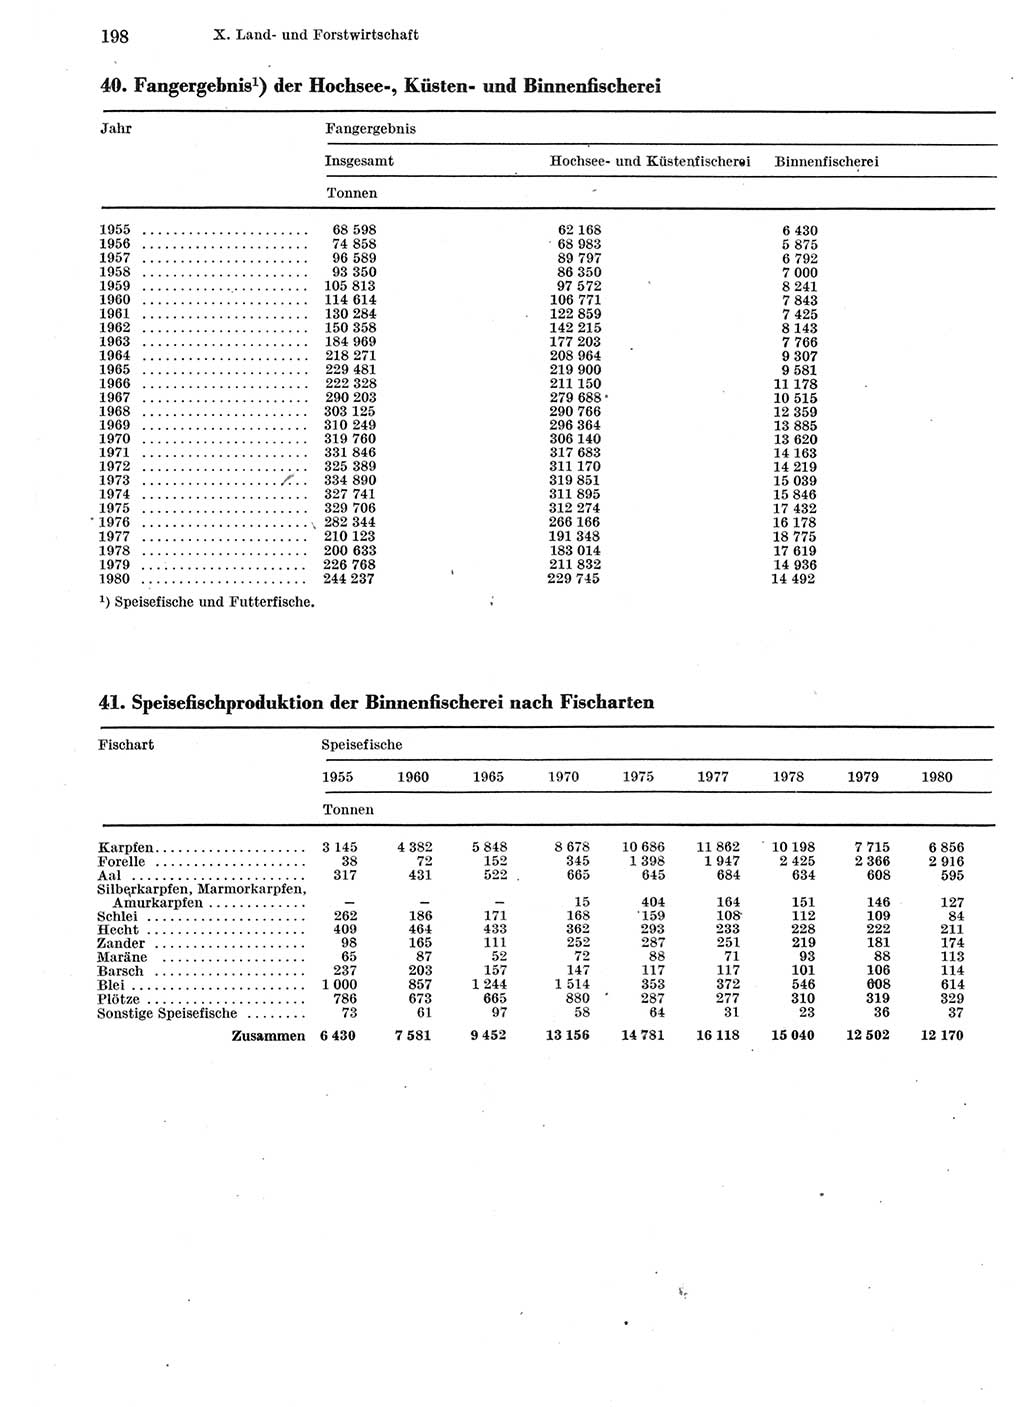 Statistisches Jahrbuch der Deutschen Demokratischen Republik (DDR) 1981, Seite 198 (Stat. Jb. DDR 1981, S. 198)